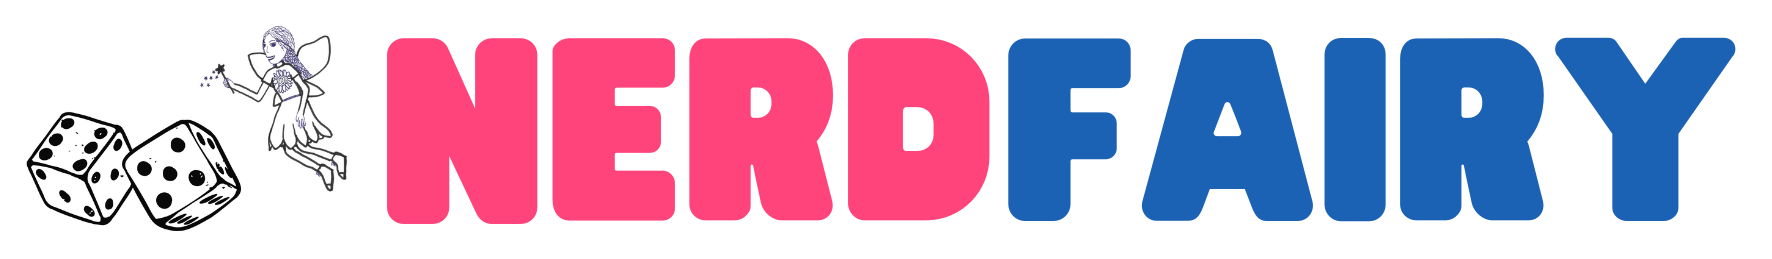 NerdFairy logo long-2